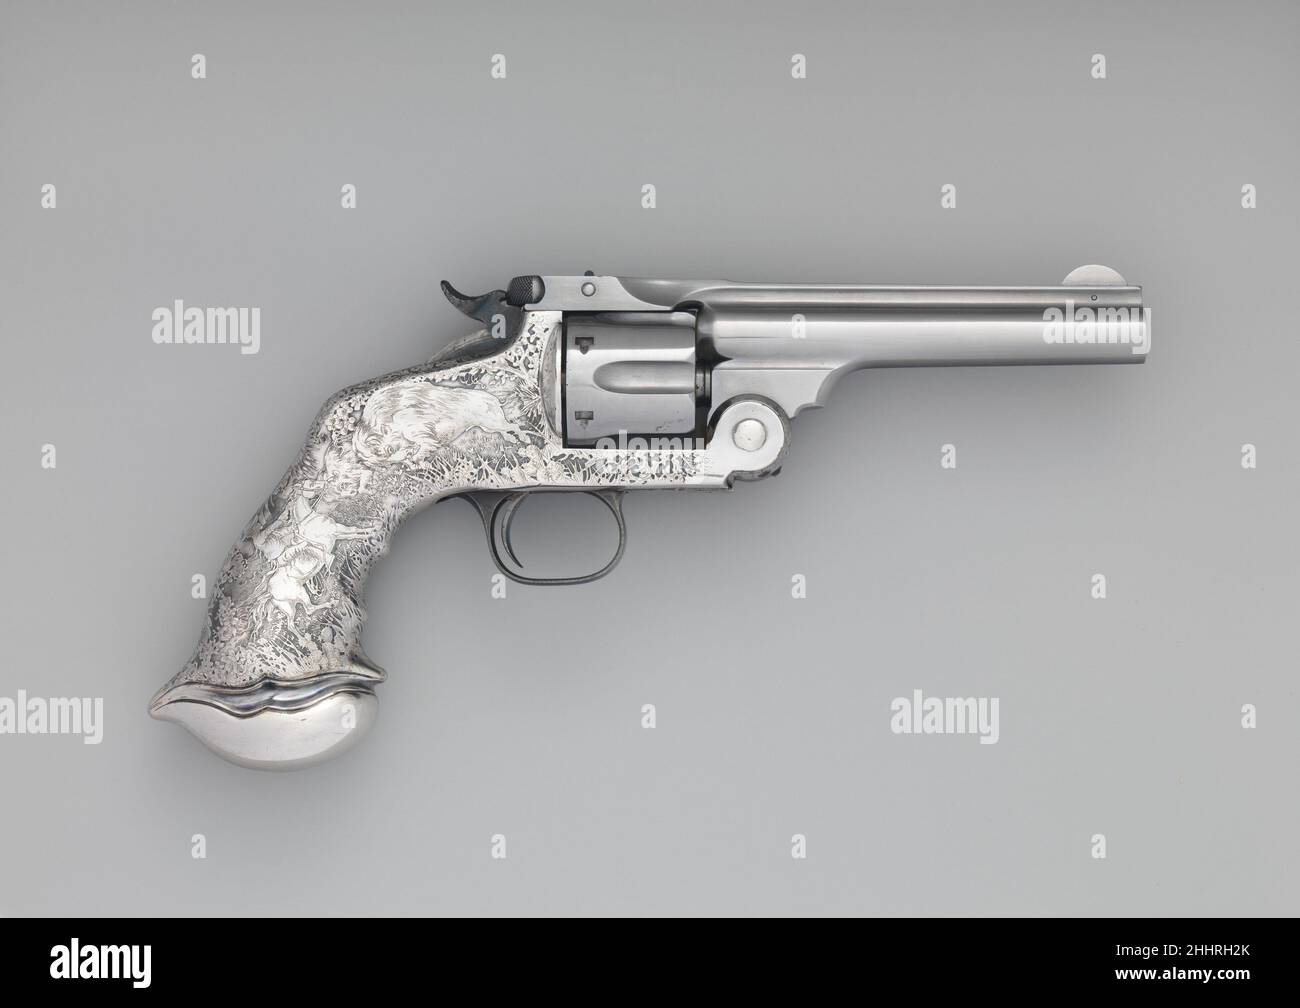 Smith y Wesson .44 Nuevo Modelo No. 3 Revolver de Acción Única, No. De  serie 25120 aprox. 1888 Smith & Wesson American Entre 1880 y 1905, Tiffany  & Co. Embelleció una serie